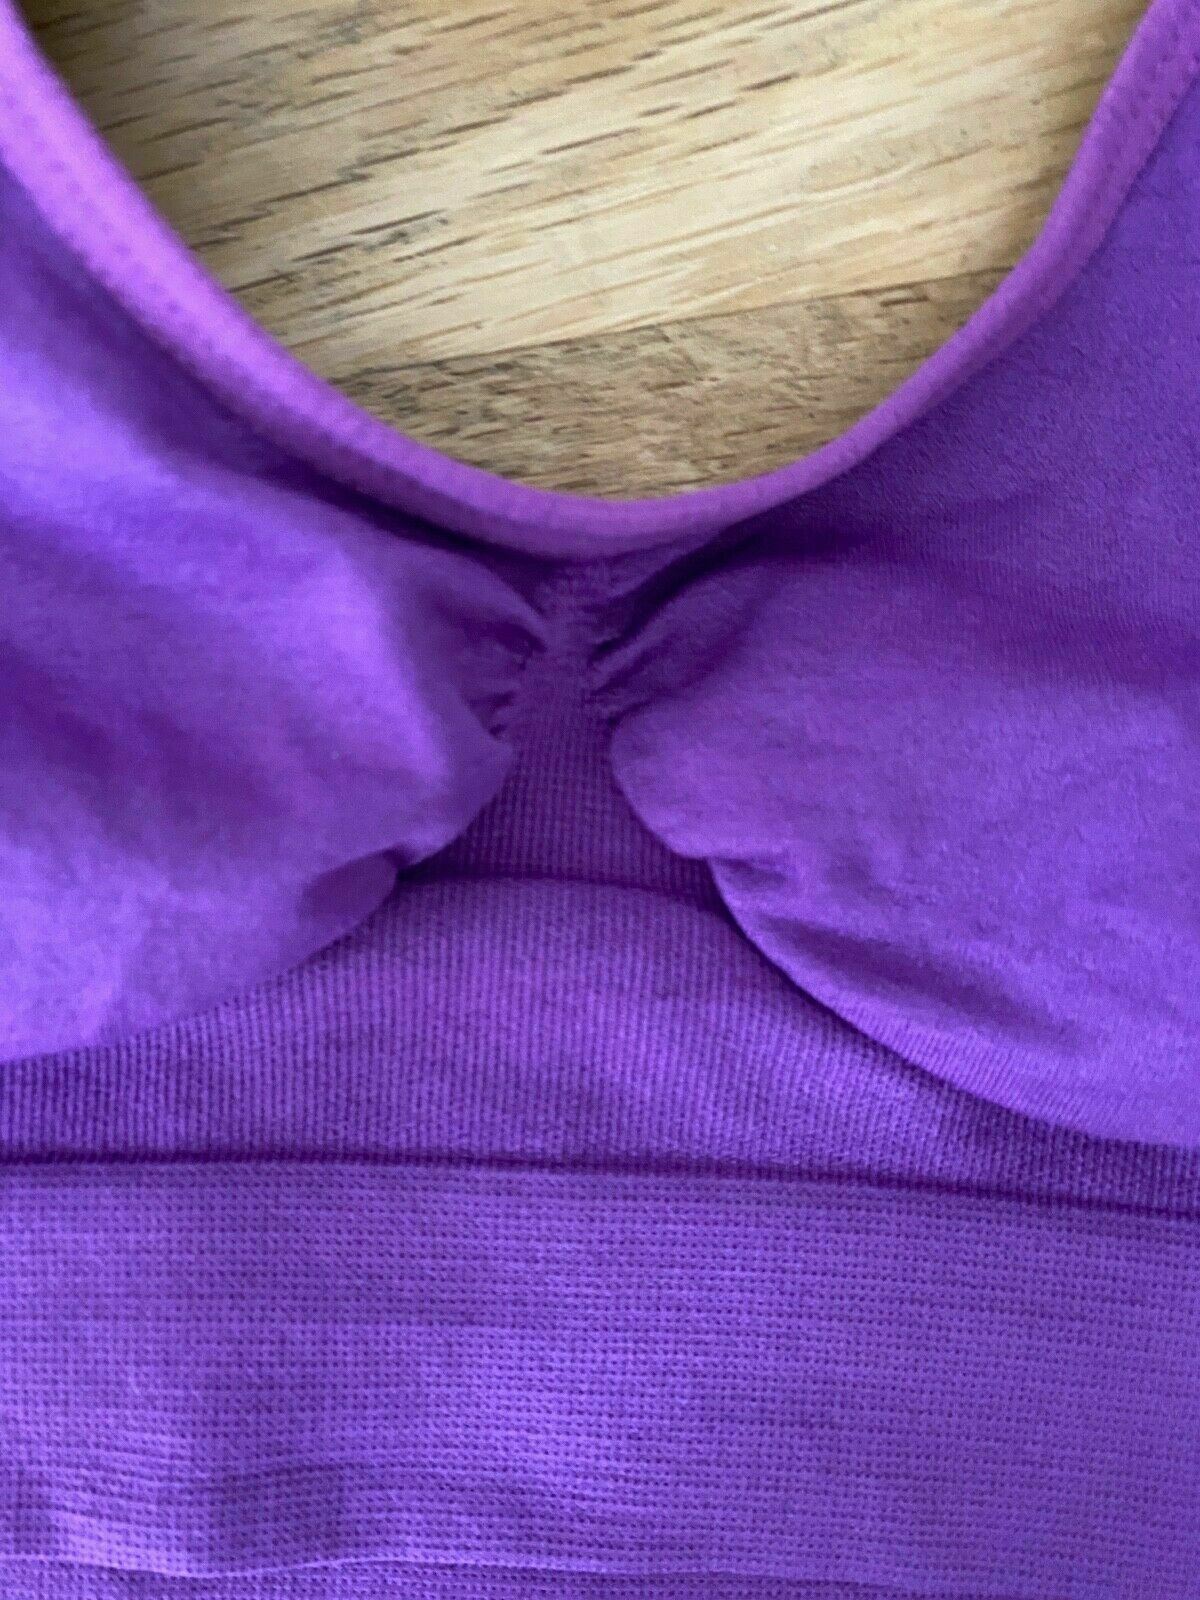 Shear Shapewear Purple Comfort Bra Size S 6 - 8